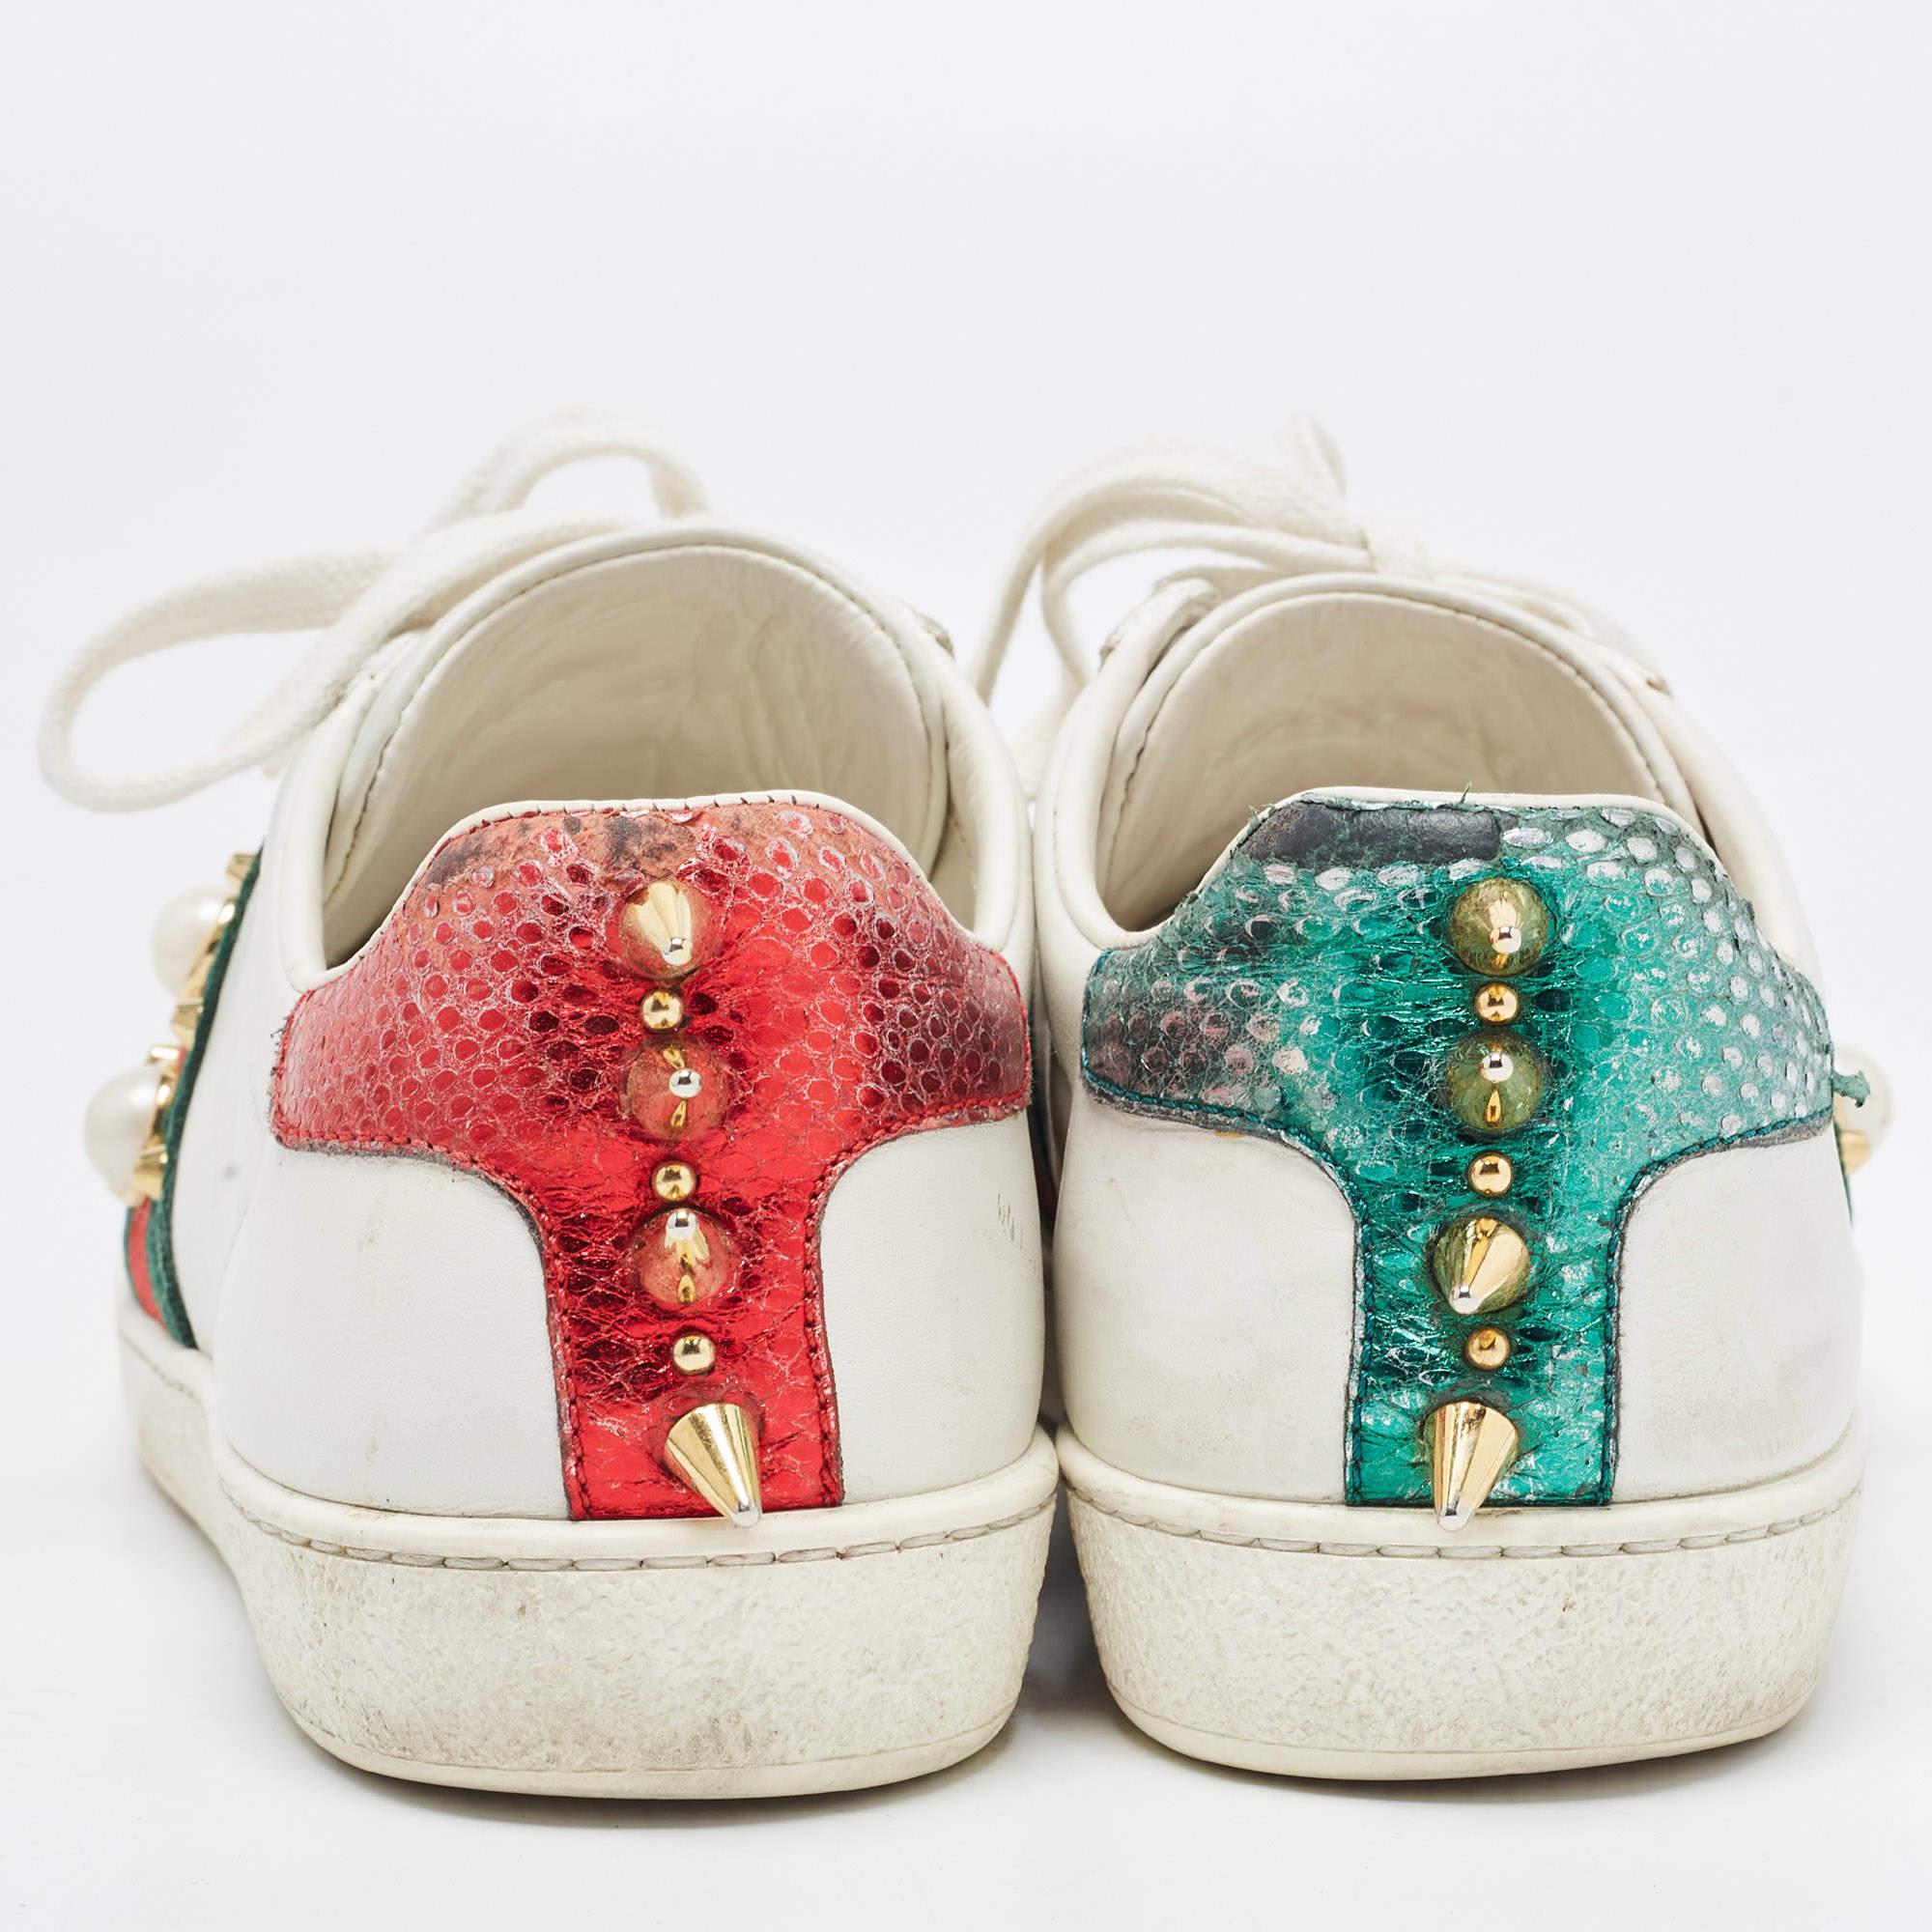 Dieses Gucci Paar aus Leder ist mit charakteristischen Details versehen und hat einen tiefen Ausschnitt. Die Sneaker sind mit Schnürsenkeln auf dem Obermaterial, dem kultigen Webstreifen mit Kunstperlen und Nieten an den Seiten und